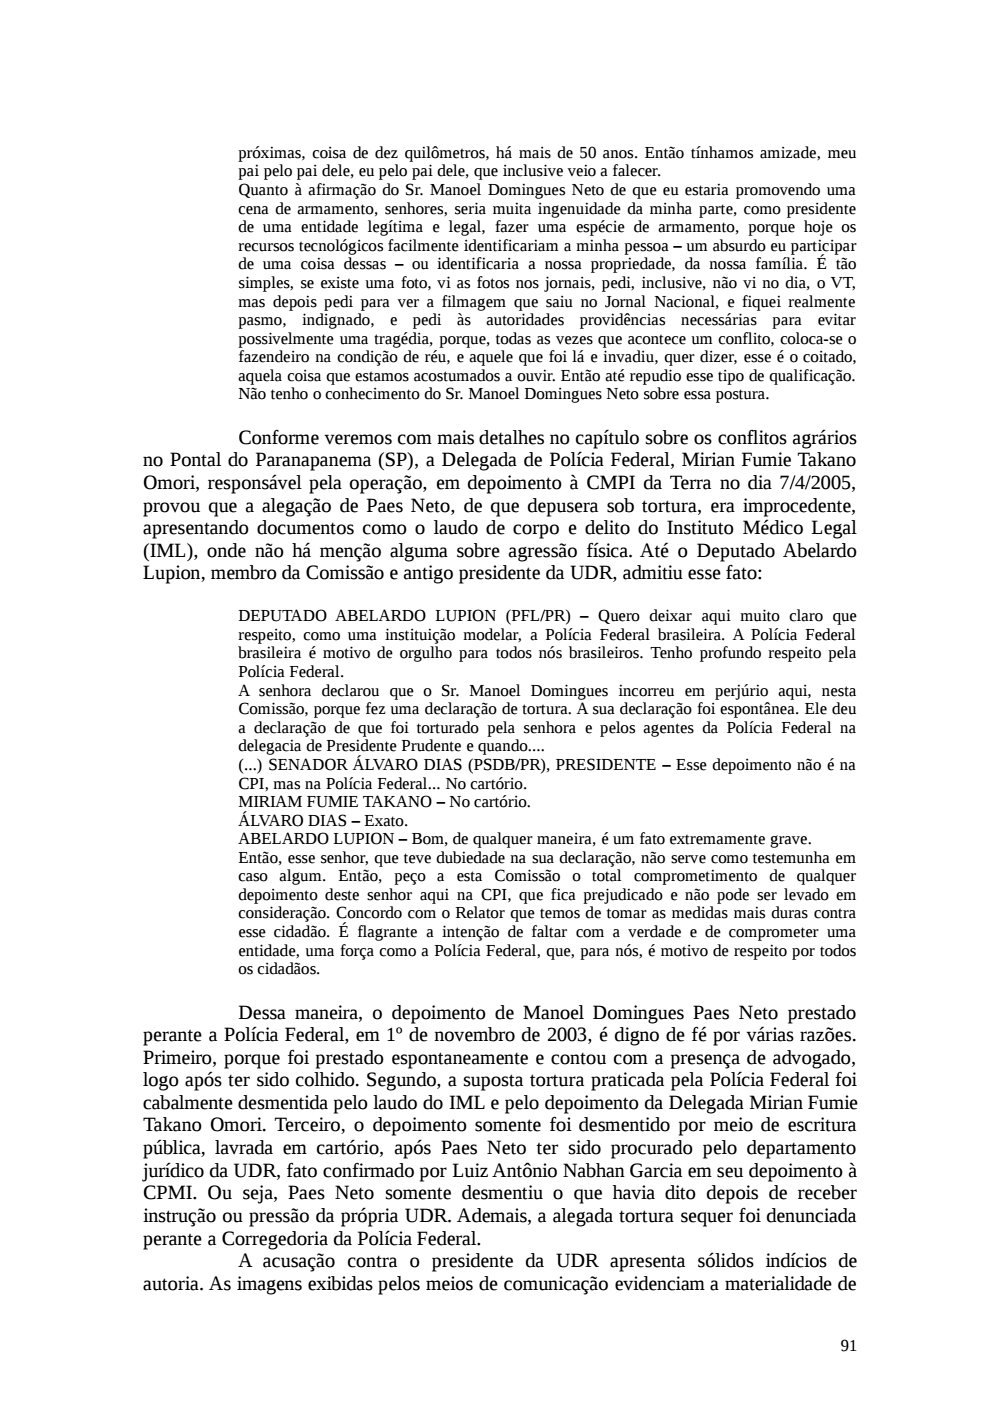 Page 91 from Relatório final da comissão